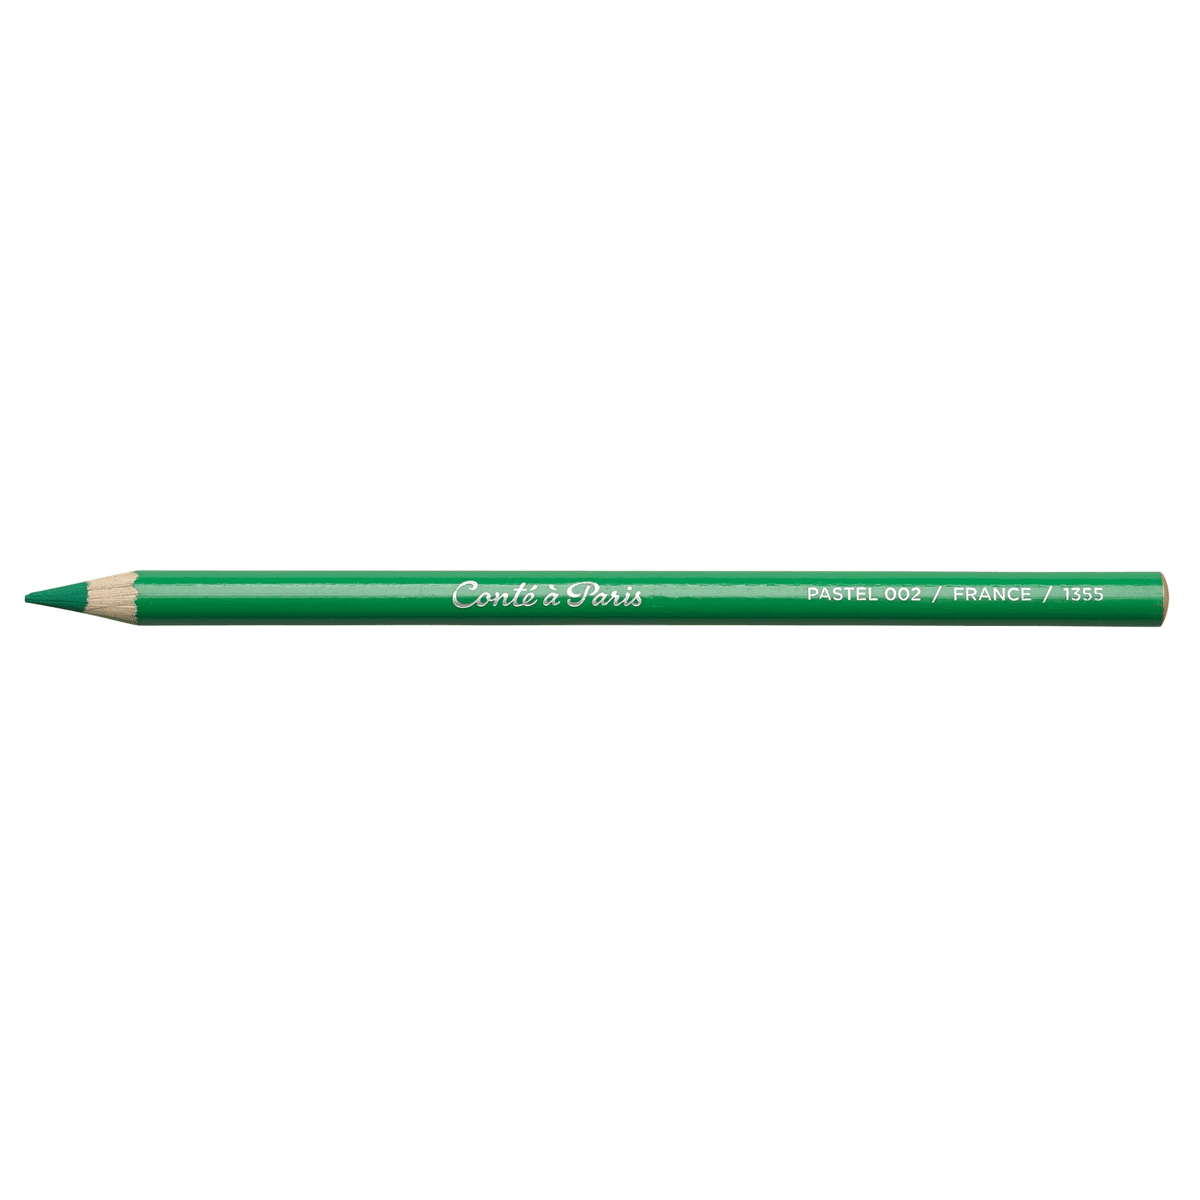 Conte Pastel Pencil - Dark Green - 002